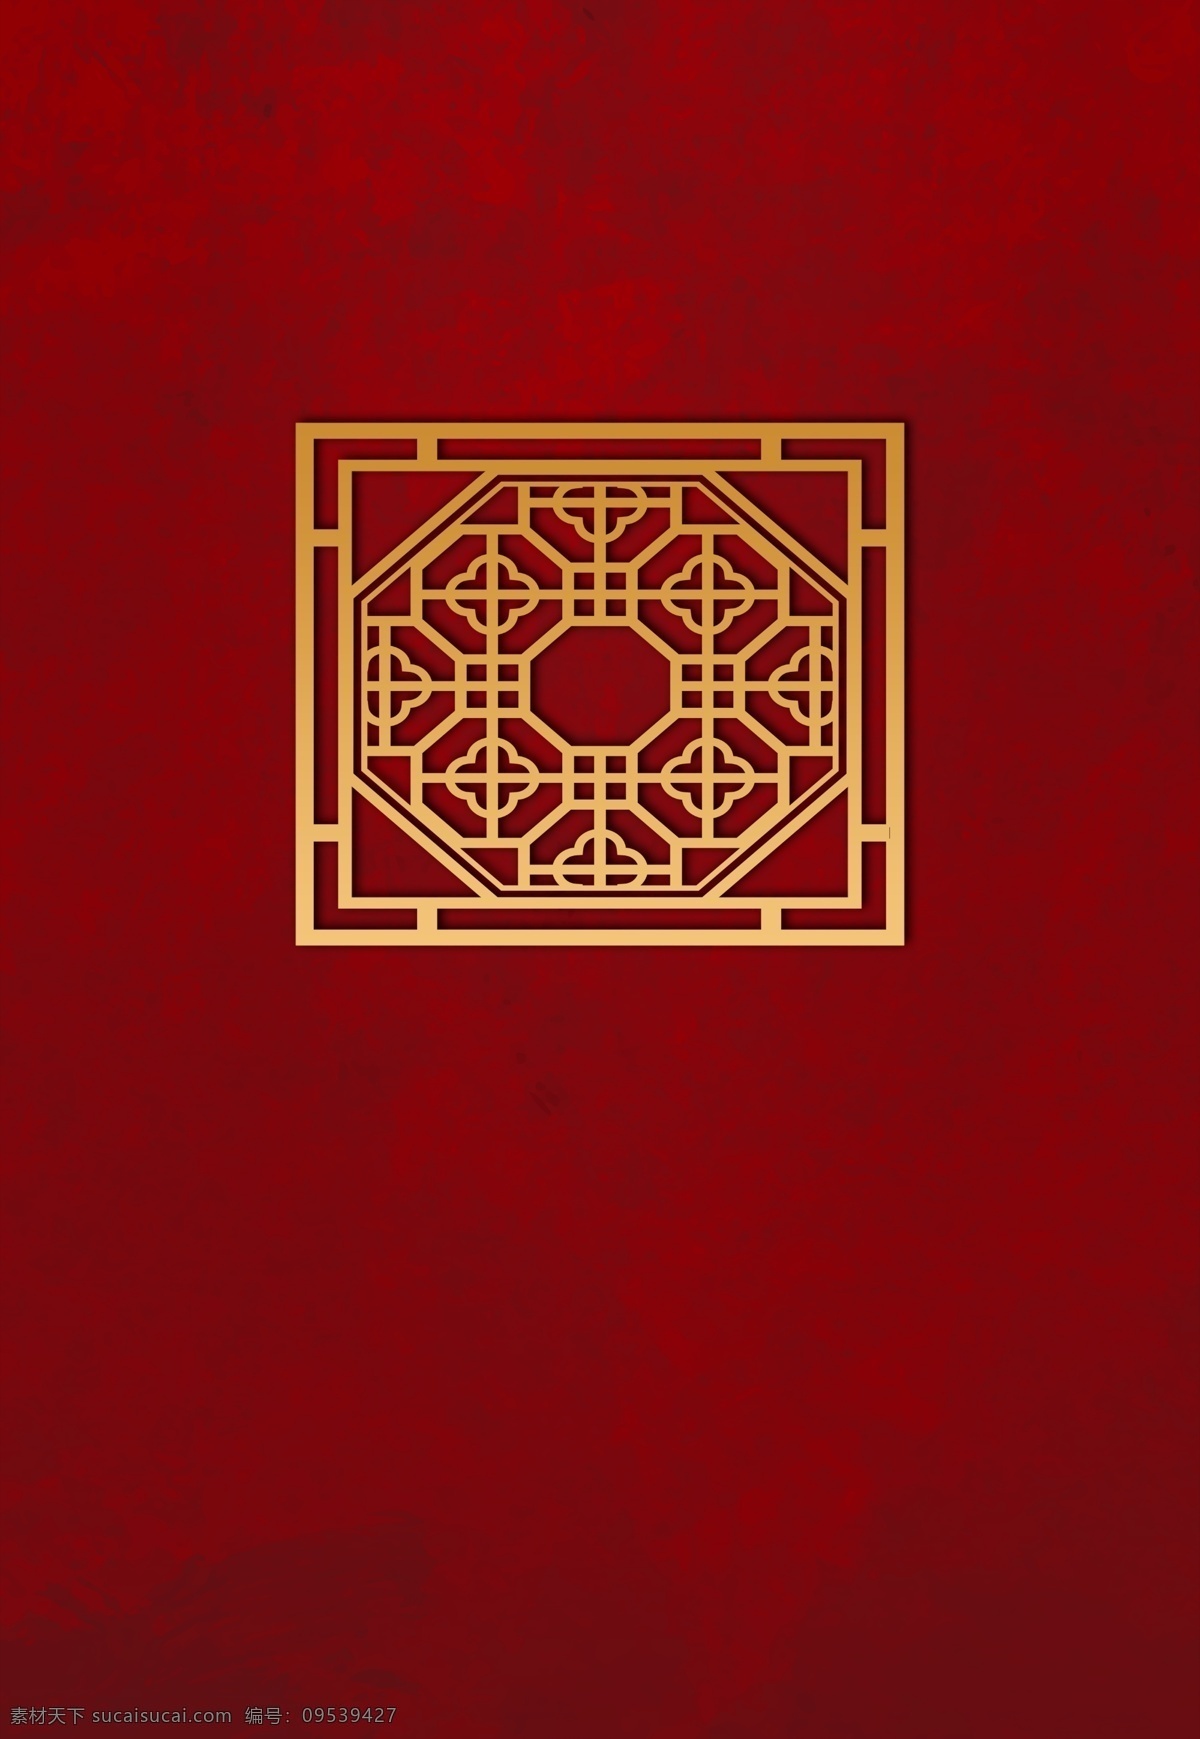 中式 婚礼 副 背景 中式婚礼 红色婚礼 中国风 中国风婚礼 婚礼设计 婚礼效果图 中式设计 中式效果图